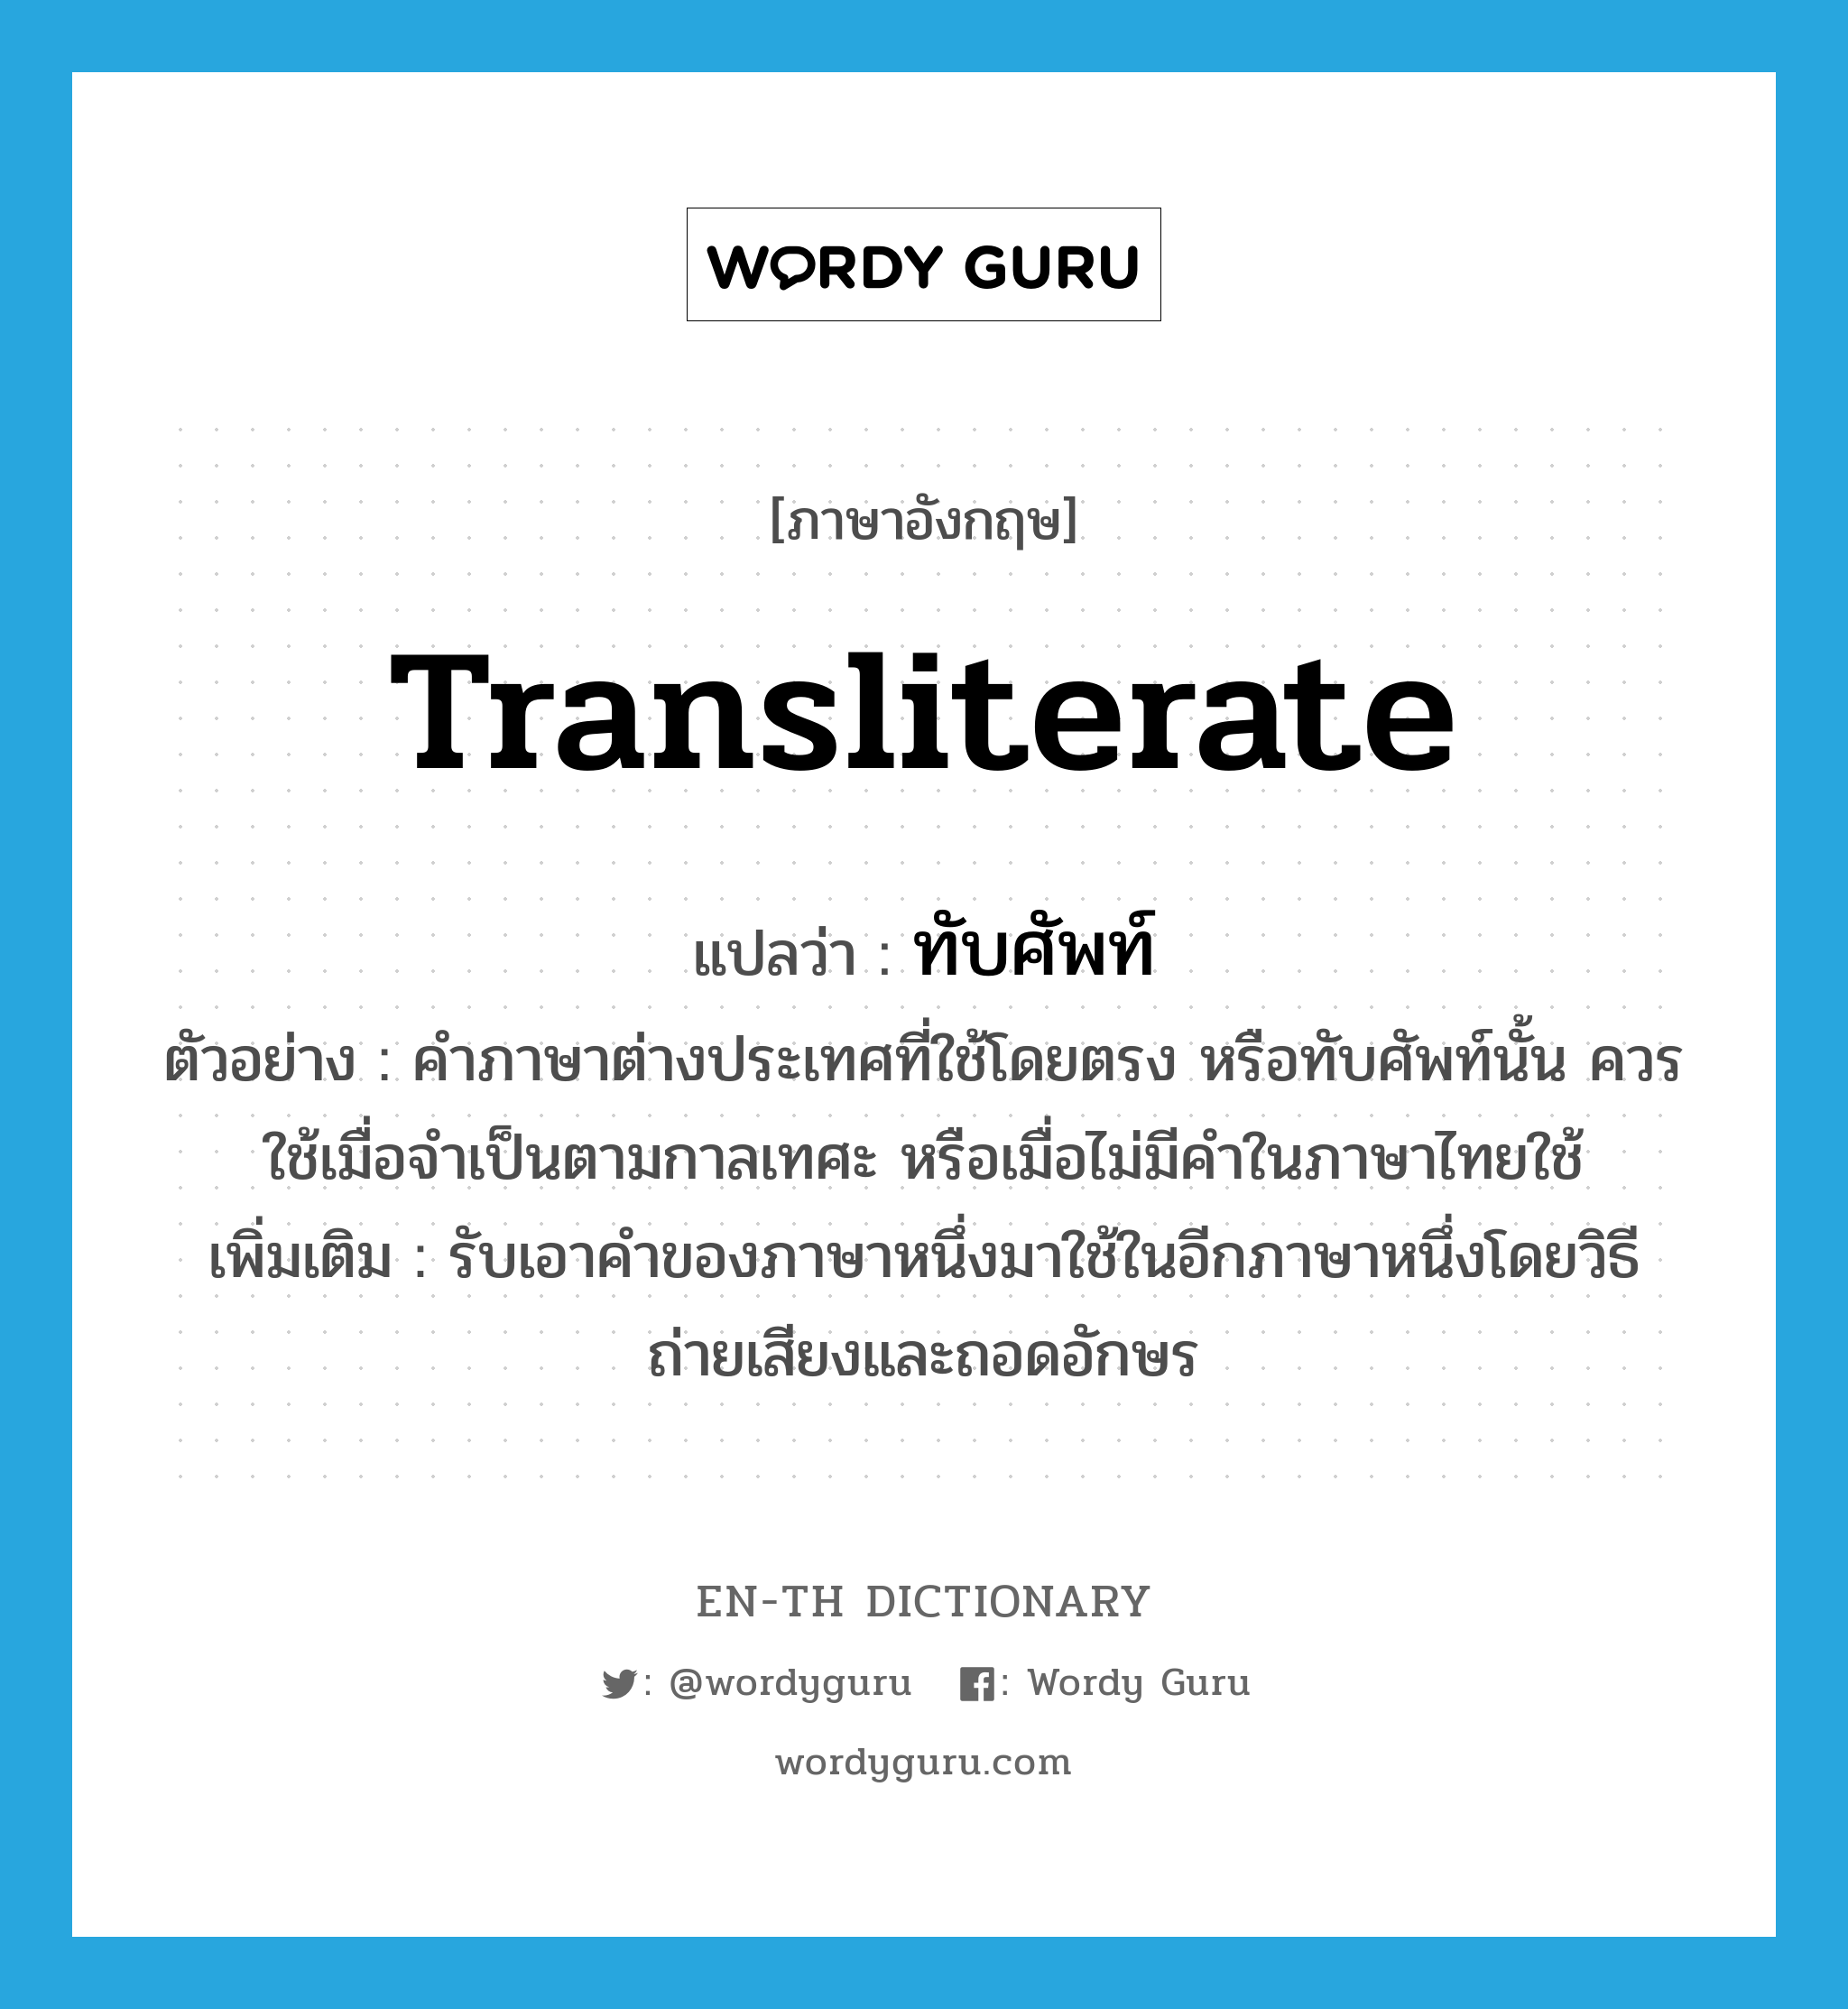 transliterate แปลว่า?, คำศัพท์ภาษาอังกฤษ transliterate แปลว่า ทับศัพท์ ประเภท V ตัวอย่าง คำภาษาต่างประเทศที่ใช้โดยตรง หรือทับศัพท์นั้น ควรใช้เมื่อจำเป็นตามกาลเทศะ หรือเมื่อไม่มีคำในภาษาไทยใช้ เพิ่มเติม รับเอาคำของภาษาหนึ่งมาใช้ในอีกภาษาหนึ่งโดยวิธีถ่ายเสียงและถอดอักษร หมวด V